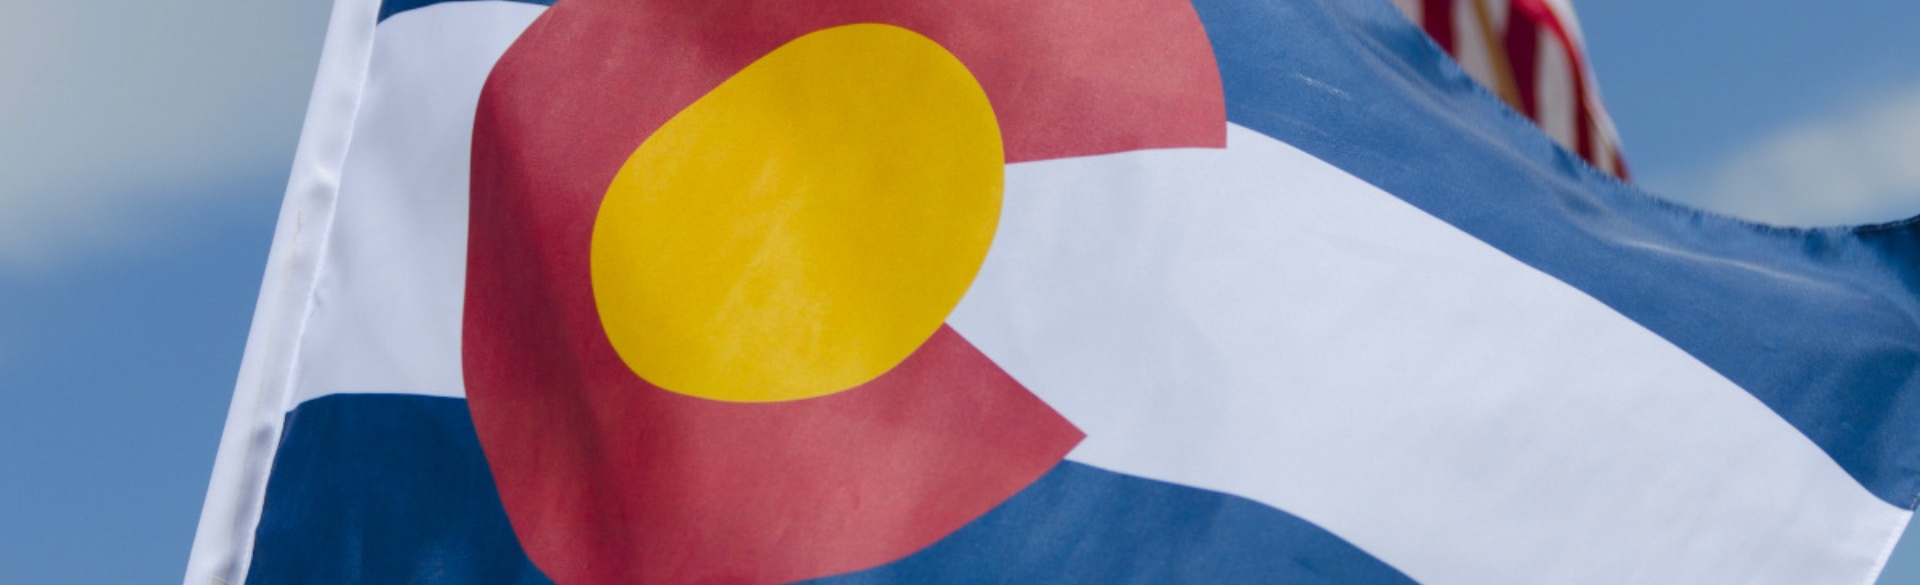 Colorado flag